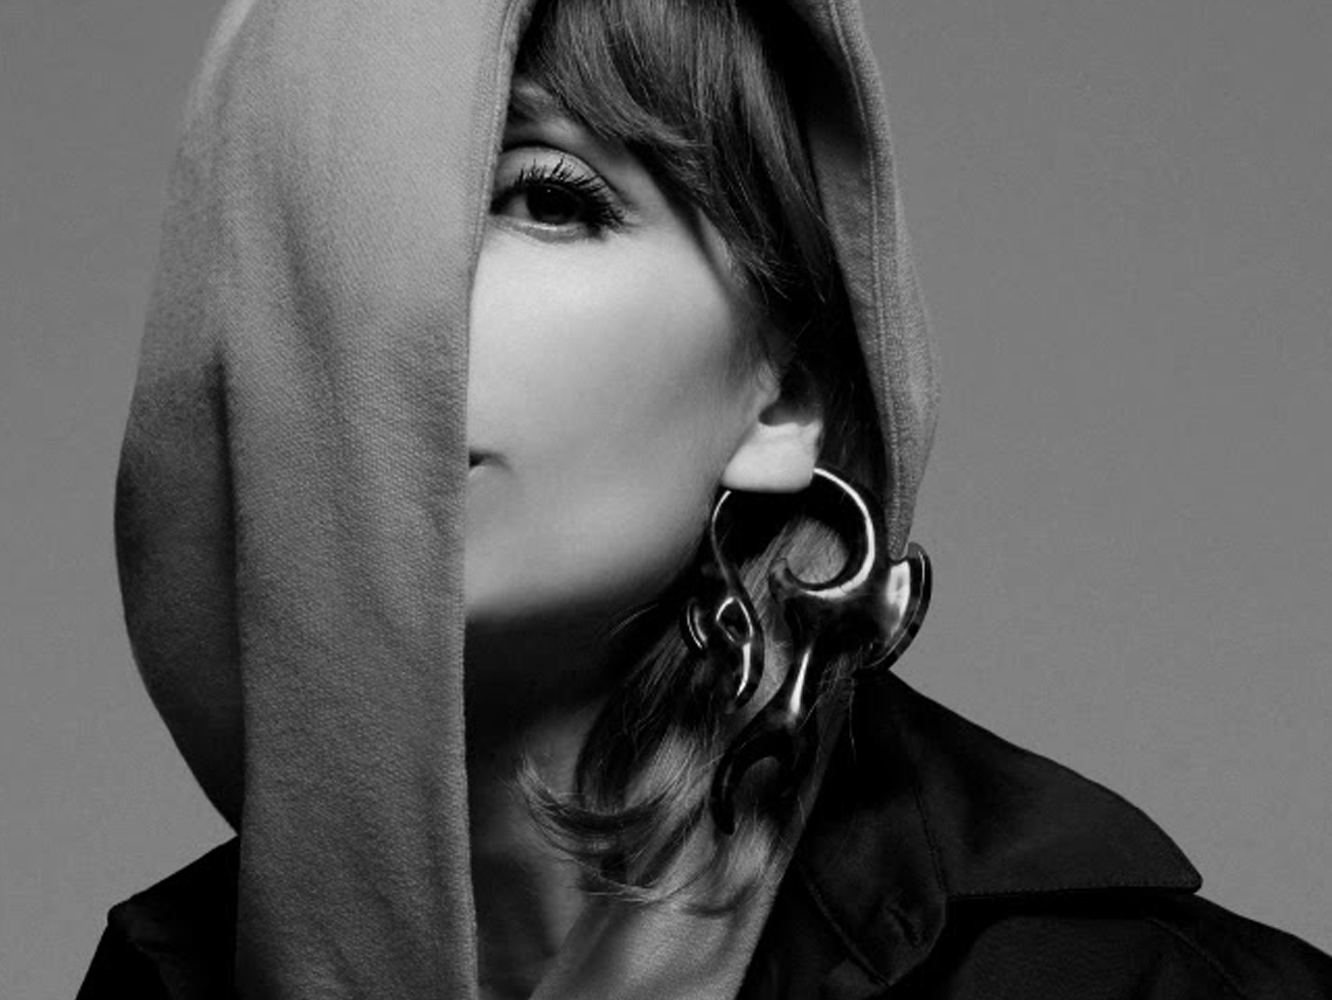  La elegancia la lleva Najwa: así suena ‘Lento’, su brillante nuevo single